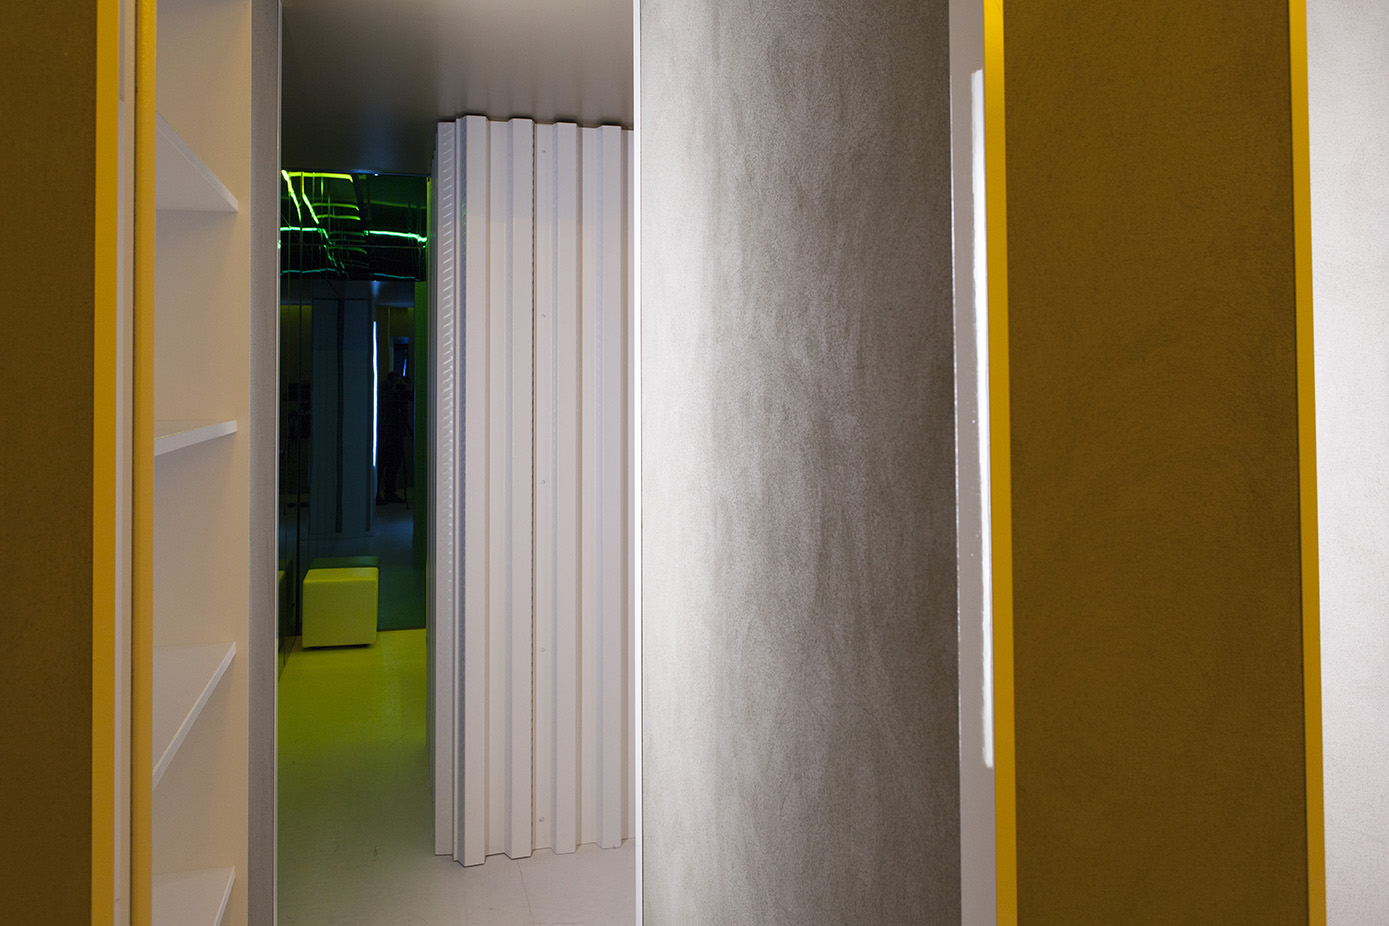 La stanza “Circolare Circolare” di Manolo De Giorgi è divisa in una serie di corridoi che liberano la circolazione fra le diverse funzioni di un’abitazione e invitano a muoversi attraverso questo spazio indefinito.